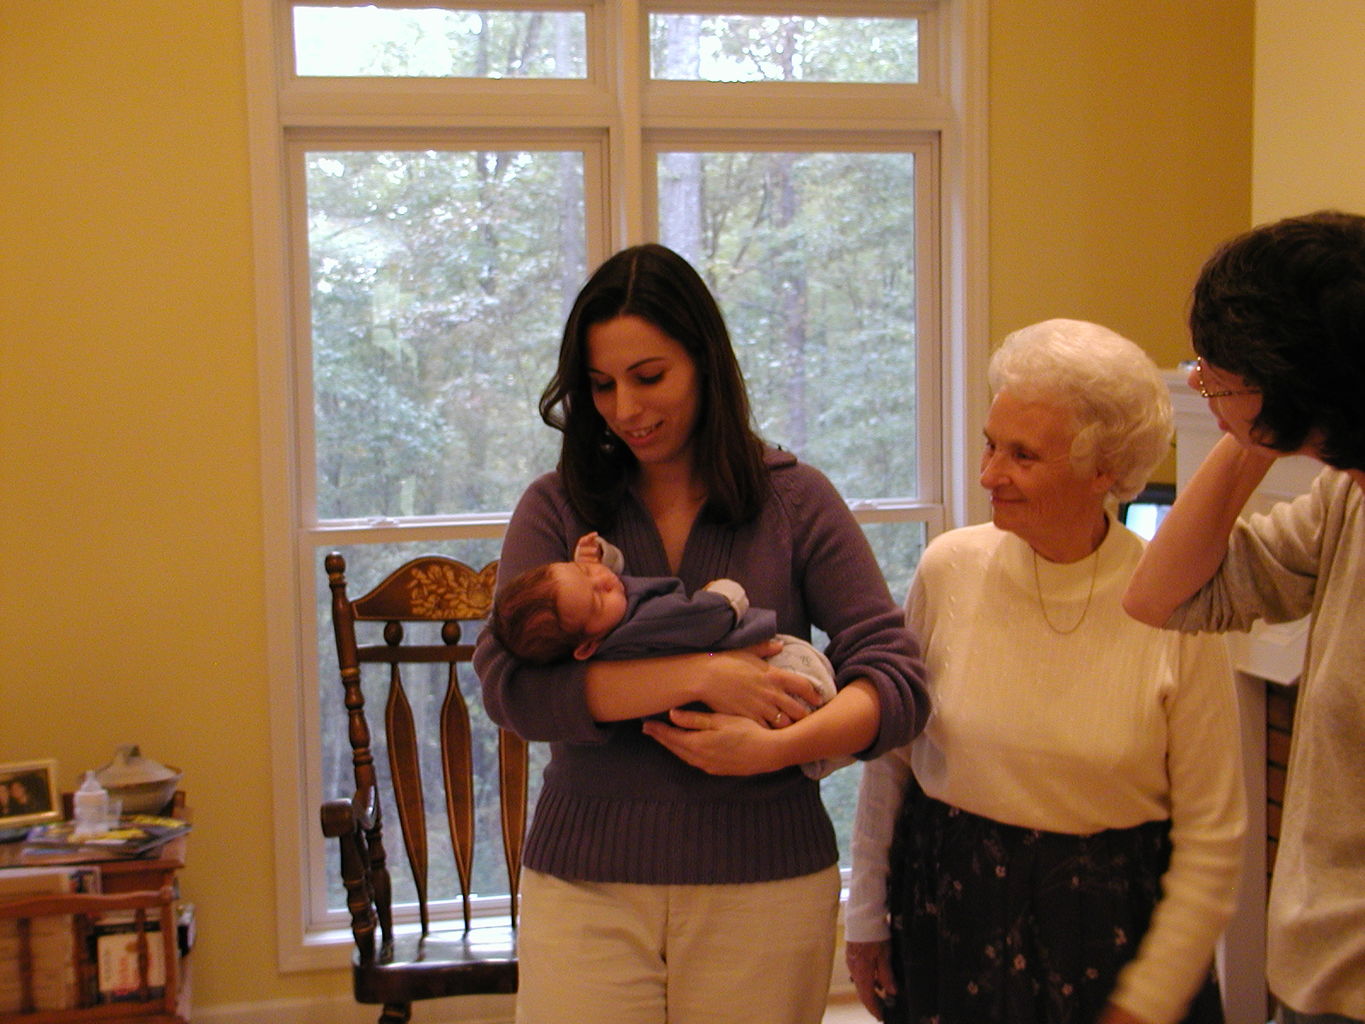 Grandma Grady's First Visit
